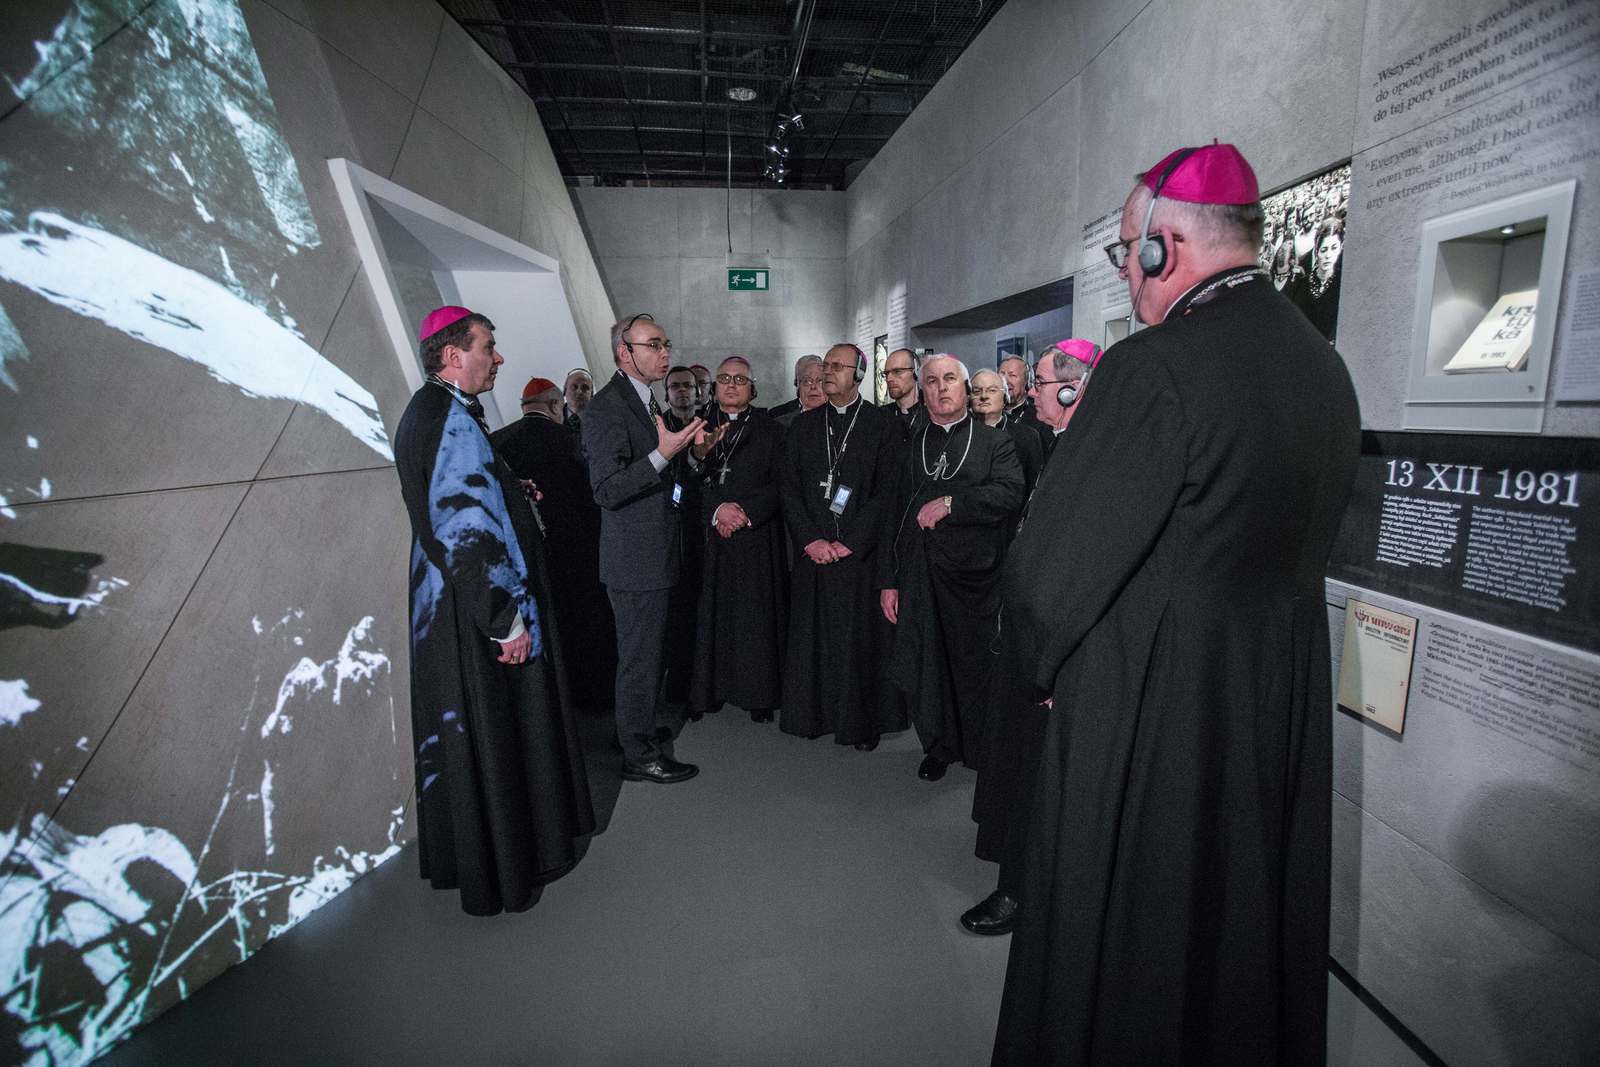 Grupa księży zwiedza wystawę stałą w Muzeum POLIN.